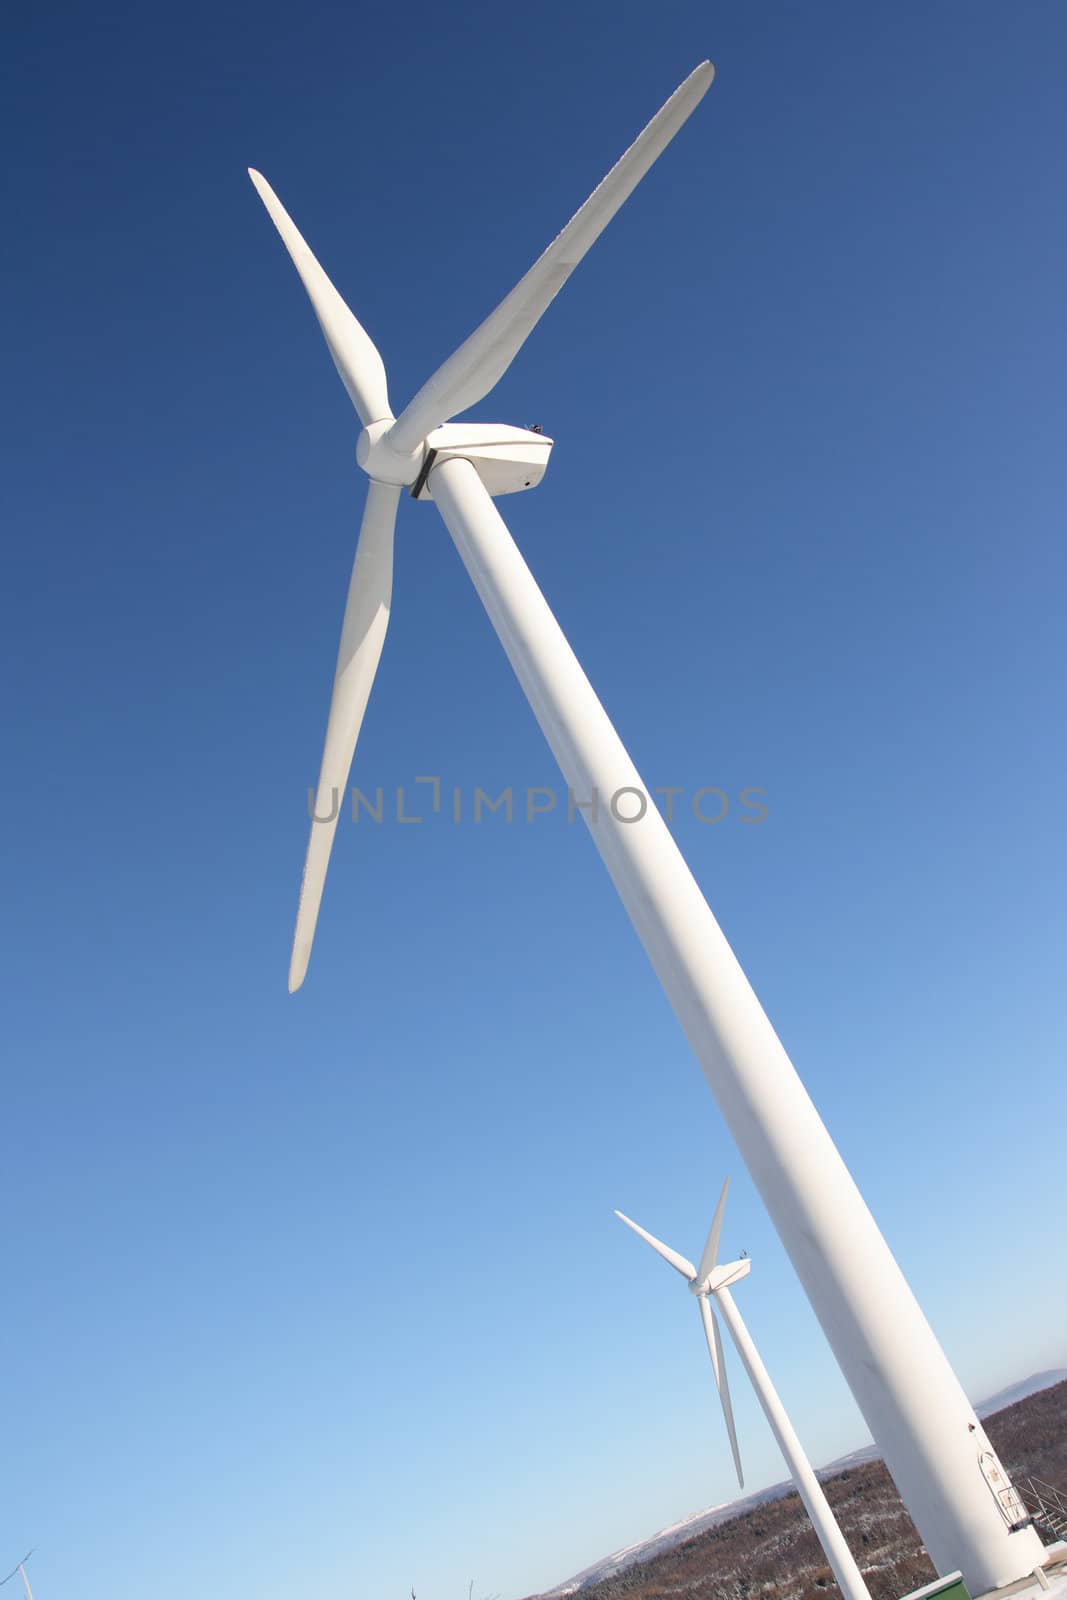 Single wind turbine in winter by Danicek